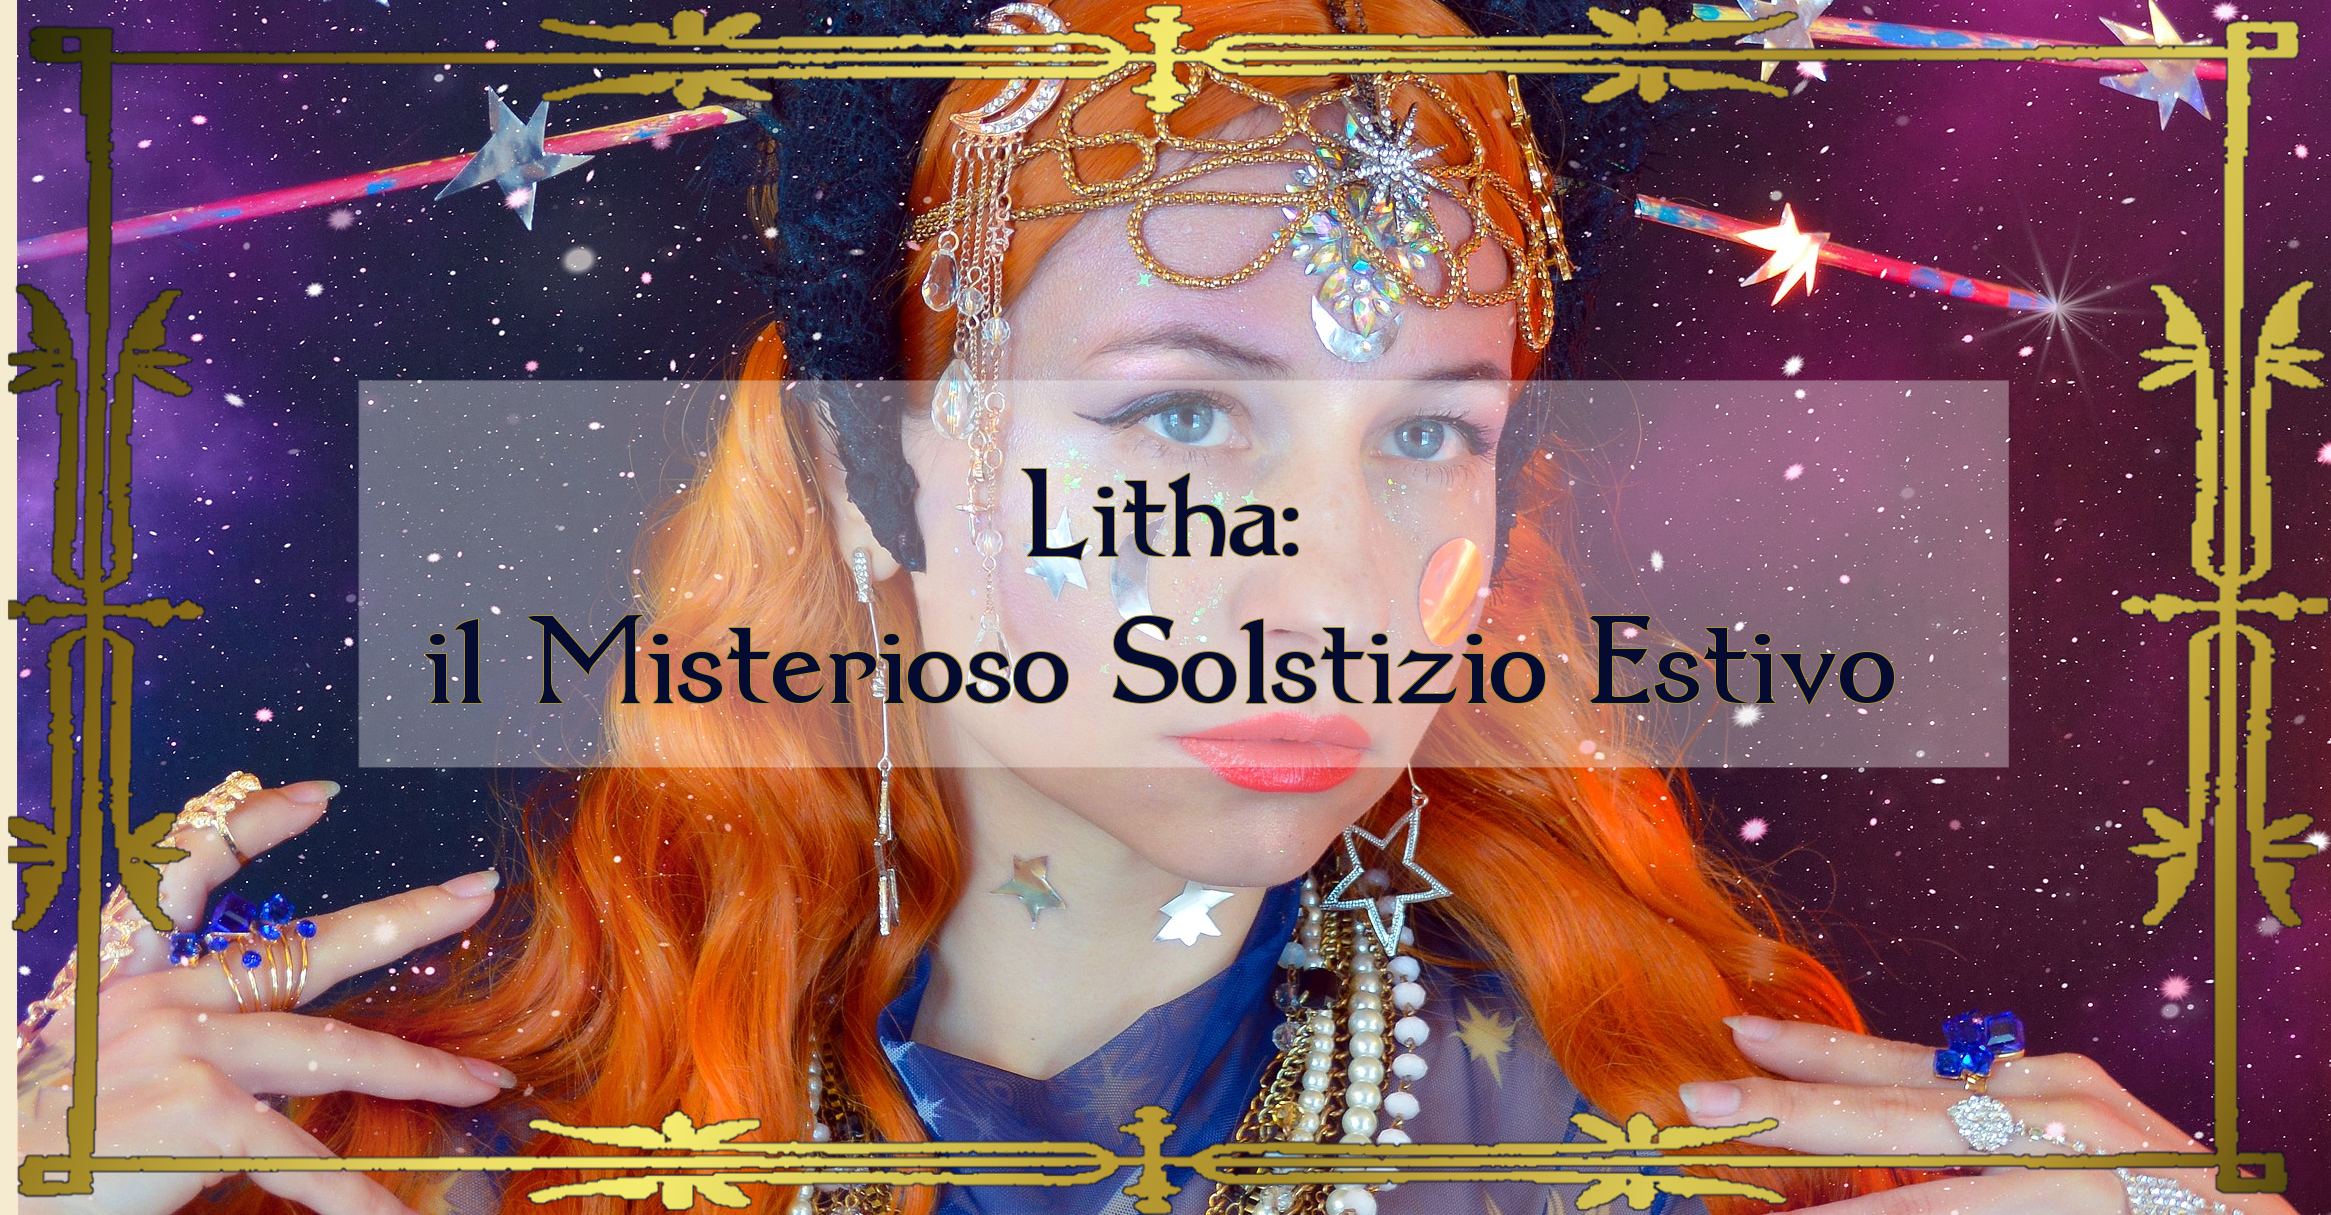 Litha: il Misterioso Solstizio Estivo